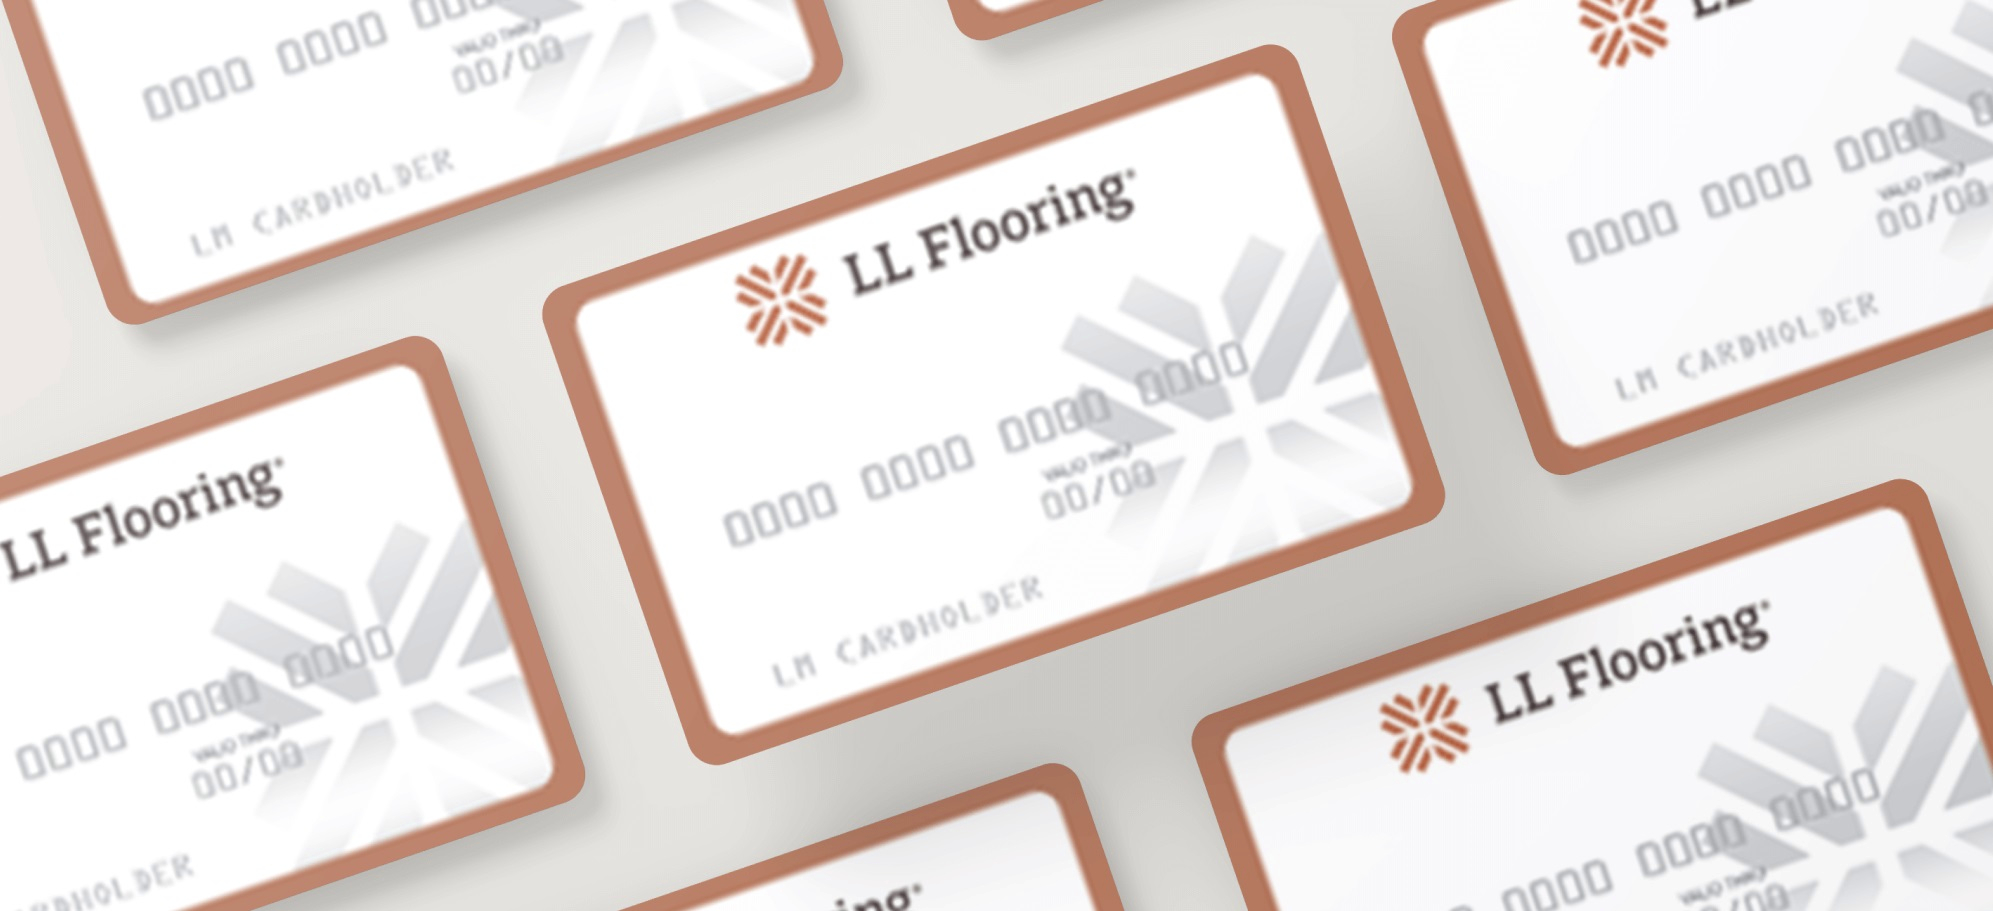 Financing Ll Flooring